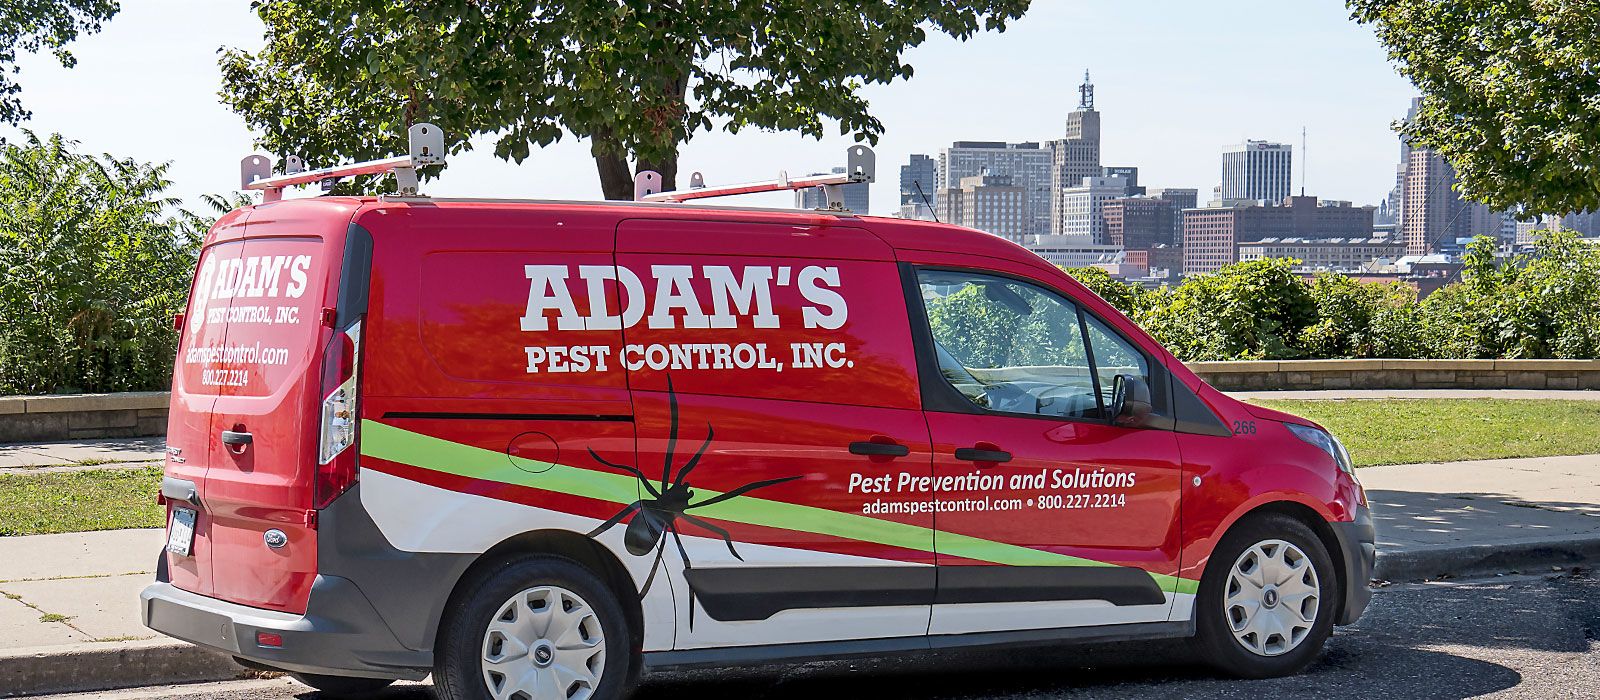 Adam's Pest Control Van In St. Paul